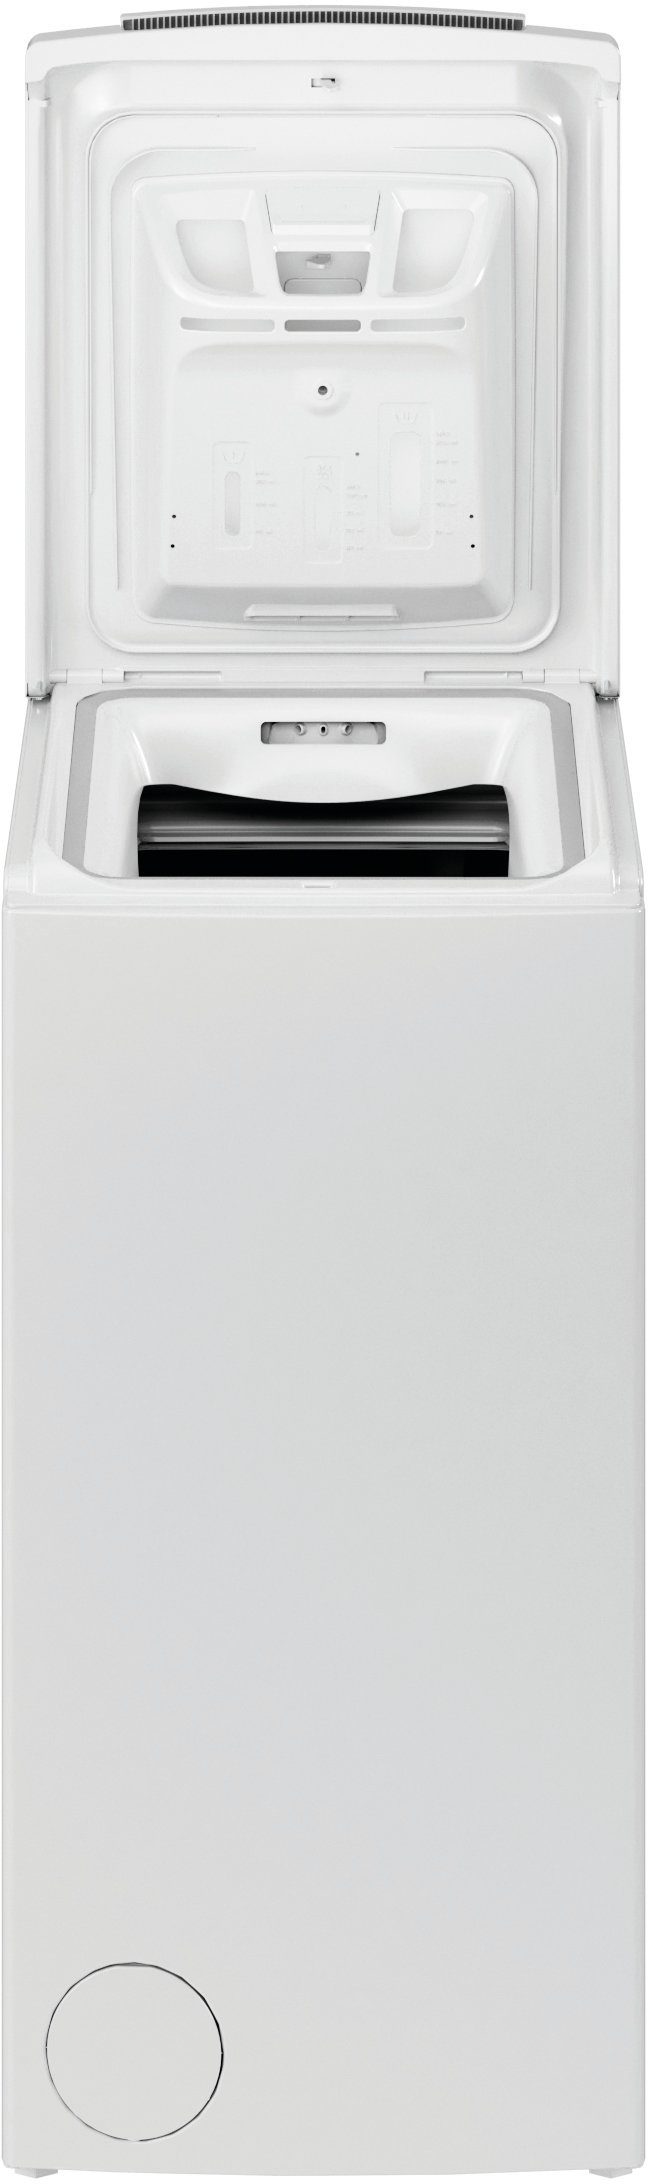 BAUKNECHT Waschmaschine Toplader WMT Eco 1200 kg, Star U/min N, 6,5 6524 Di